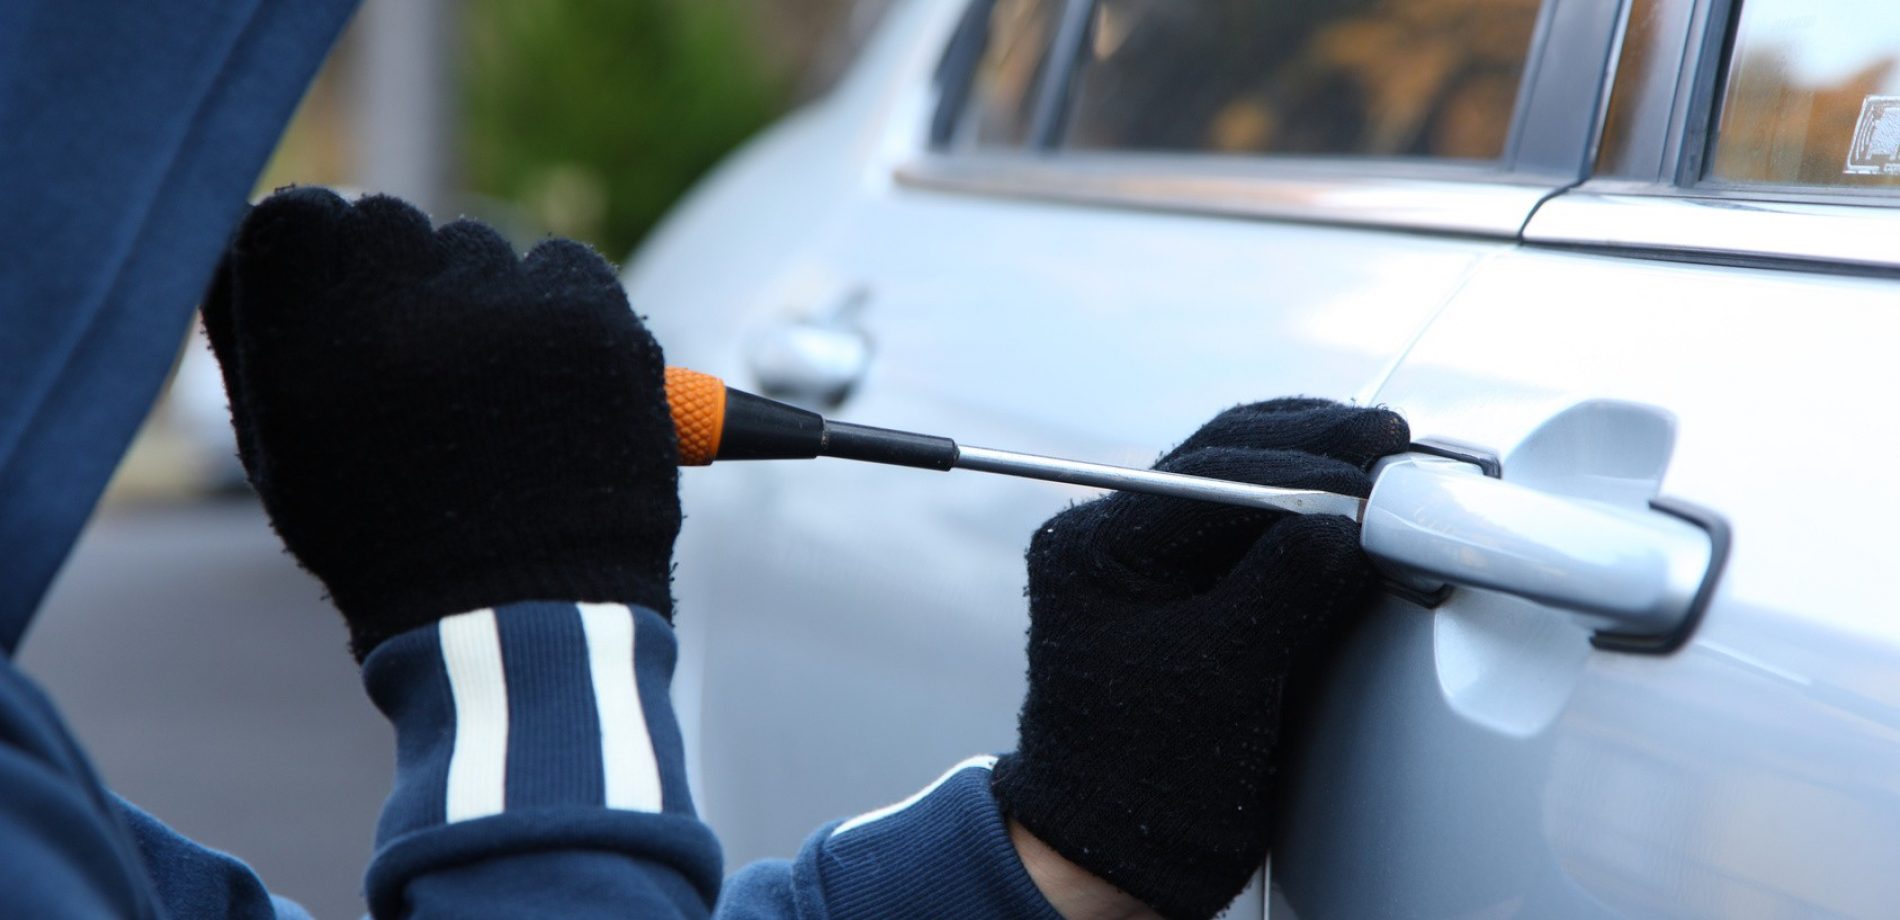 BARRETOS: Eletricista registra queixa de furto em carro no Parque do Peão